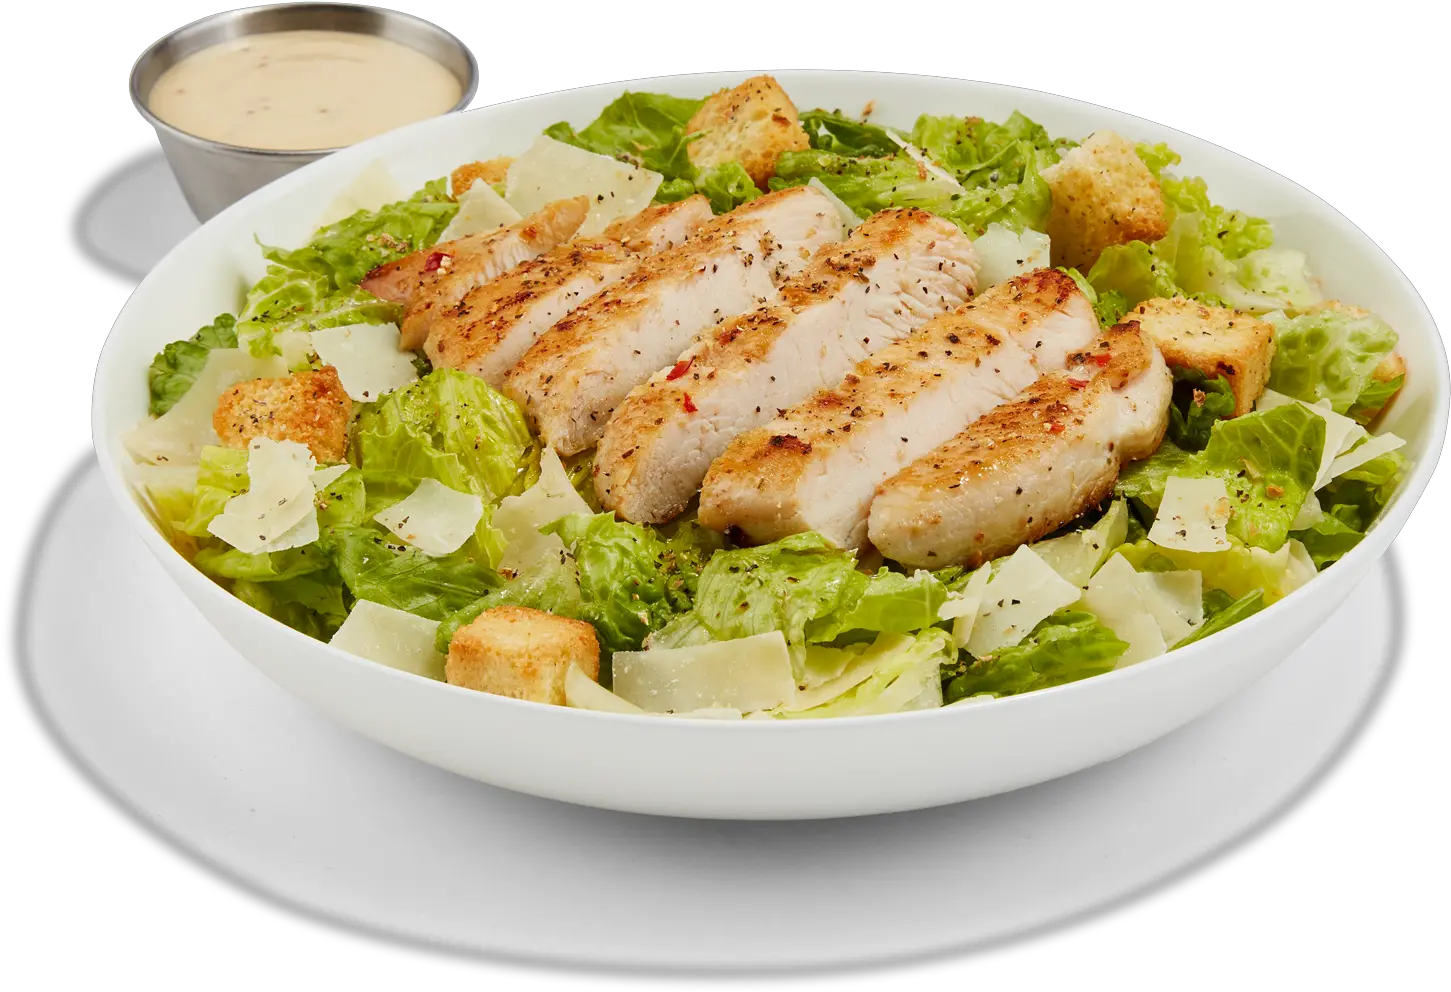 Chicken Caeser Salad Order Online Buffalo Wild Wings Buffalo Wild Wings Caesar Salad Png Salad Transparent